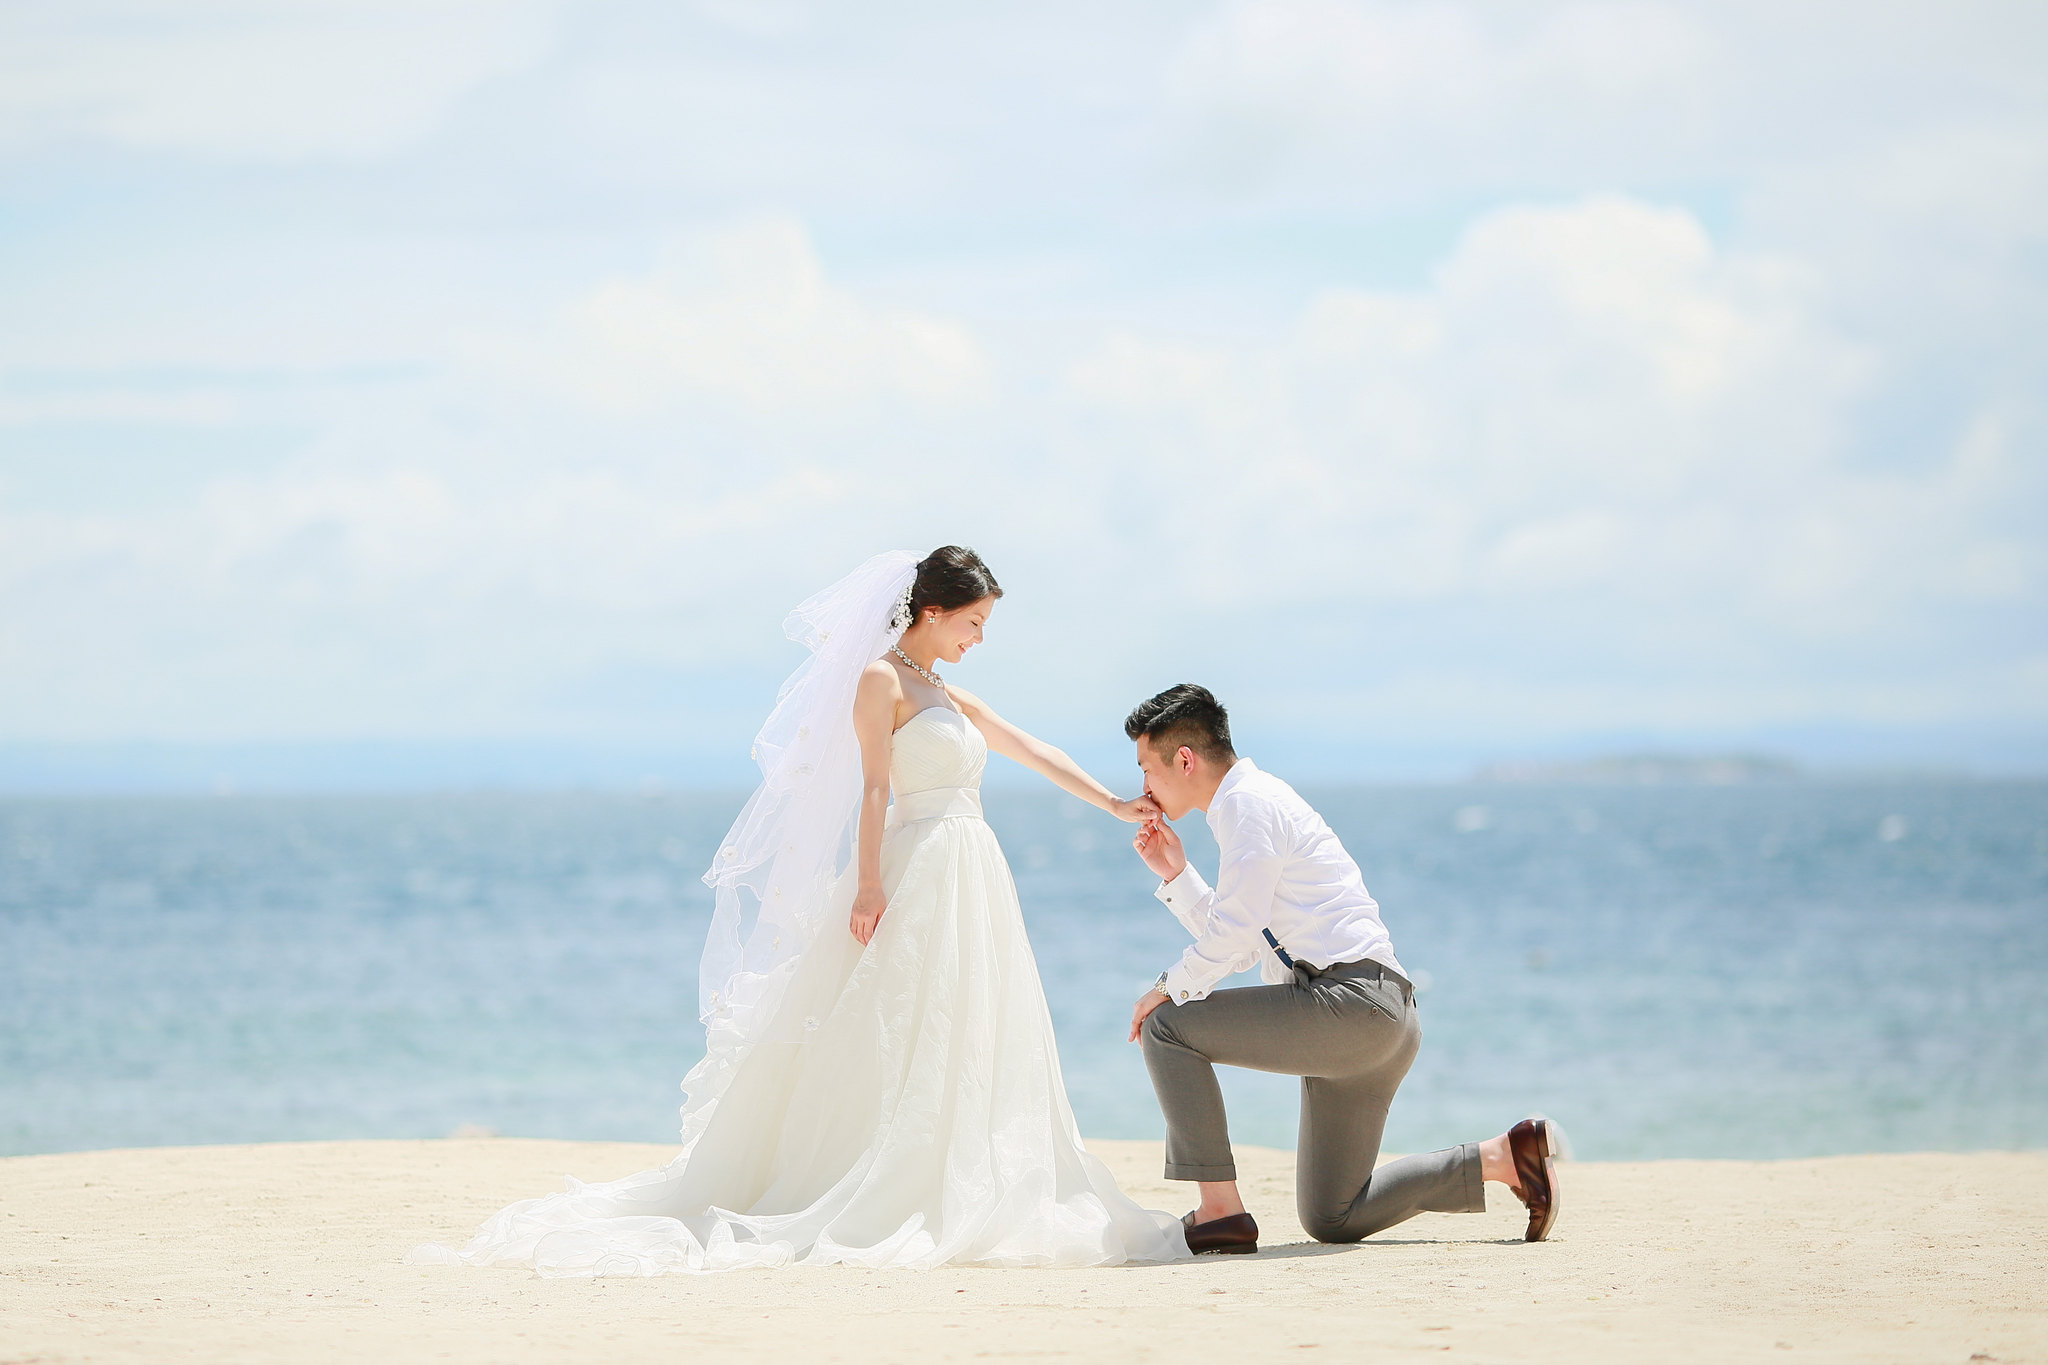 Cebu Wedding Photographer, Cebu Best Wedding Photographer